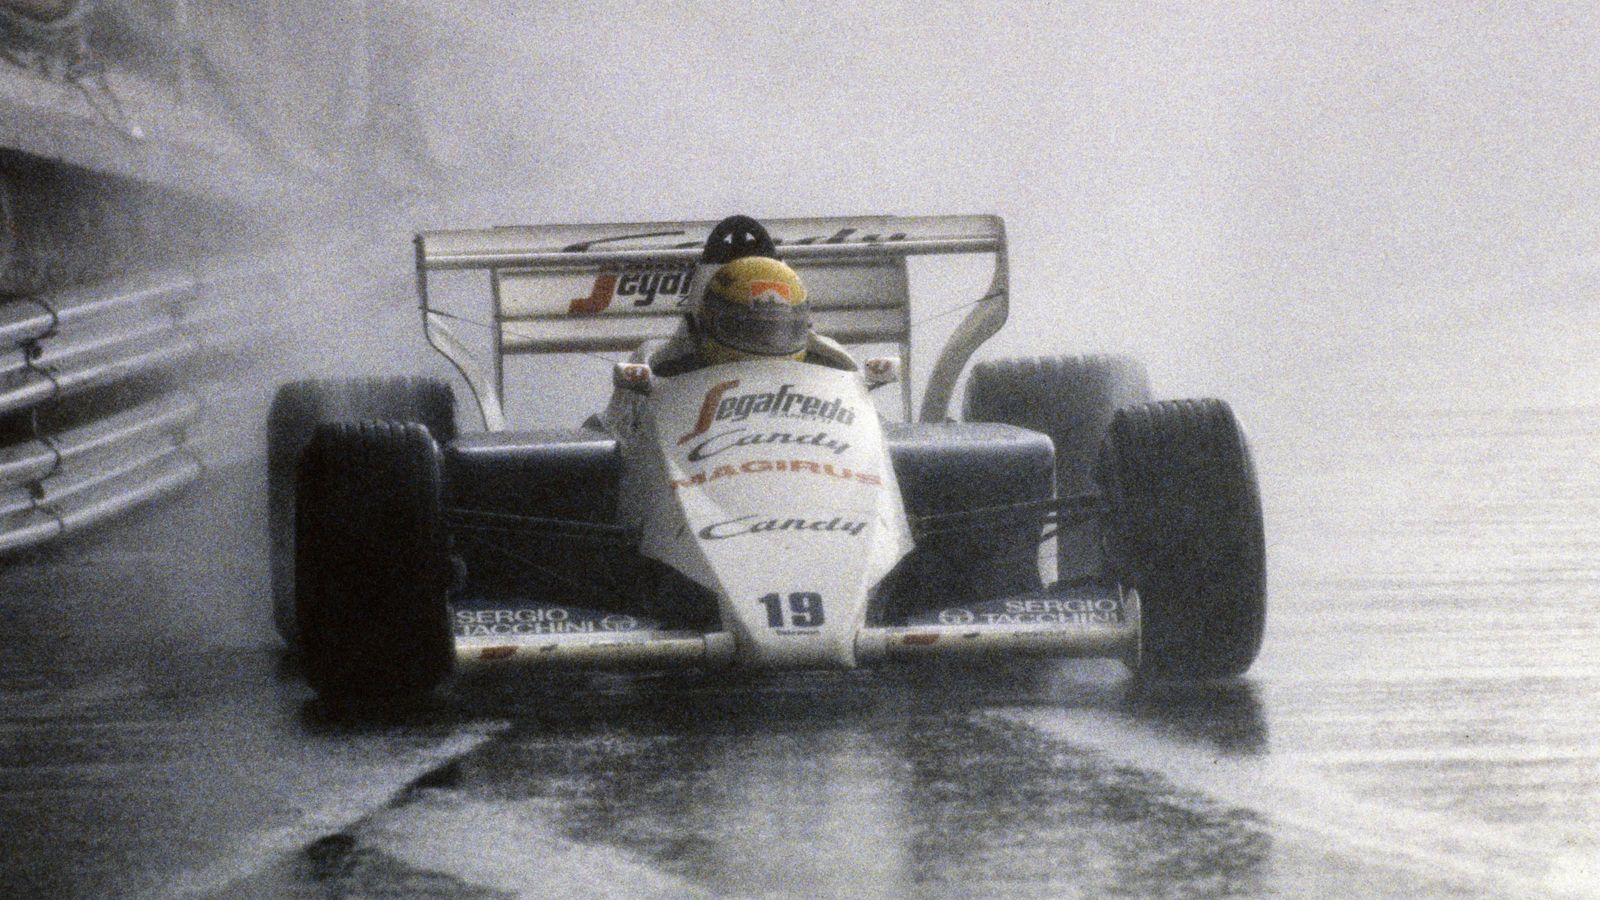 
                <strong>1984: Als Sennas Stern aufging</strong><br>
                1984 ist die erste Saison des damals 24-jährigen Ayrton Senna. Er fährt im unterlegenen Toleman – und zeigt schon damals sein außergewöhnliches Talent. Das Monaco-Rennen war so etwas wie der Durchbruch: Auf regennasser Strecke drehten sich viele Konkurrenten, doch Senna flog durch die engen Gassen des Fürstentums. Als das Rennen in der 31. Runde abgebrochen wurde, lag Senna als Zweiter nur knapp hinter Alain Prost. Anschließend erhielt er ein Angebot von Lotus, wo er 1985 dann auch hin wechselte.
              